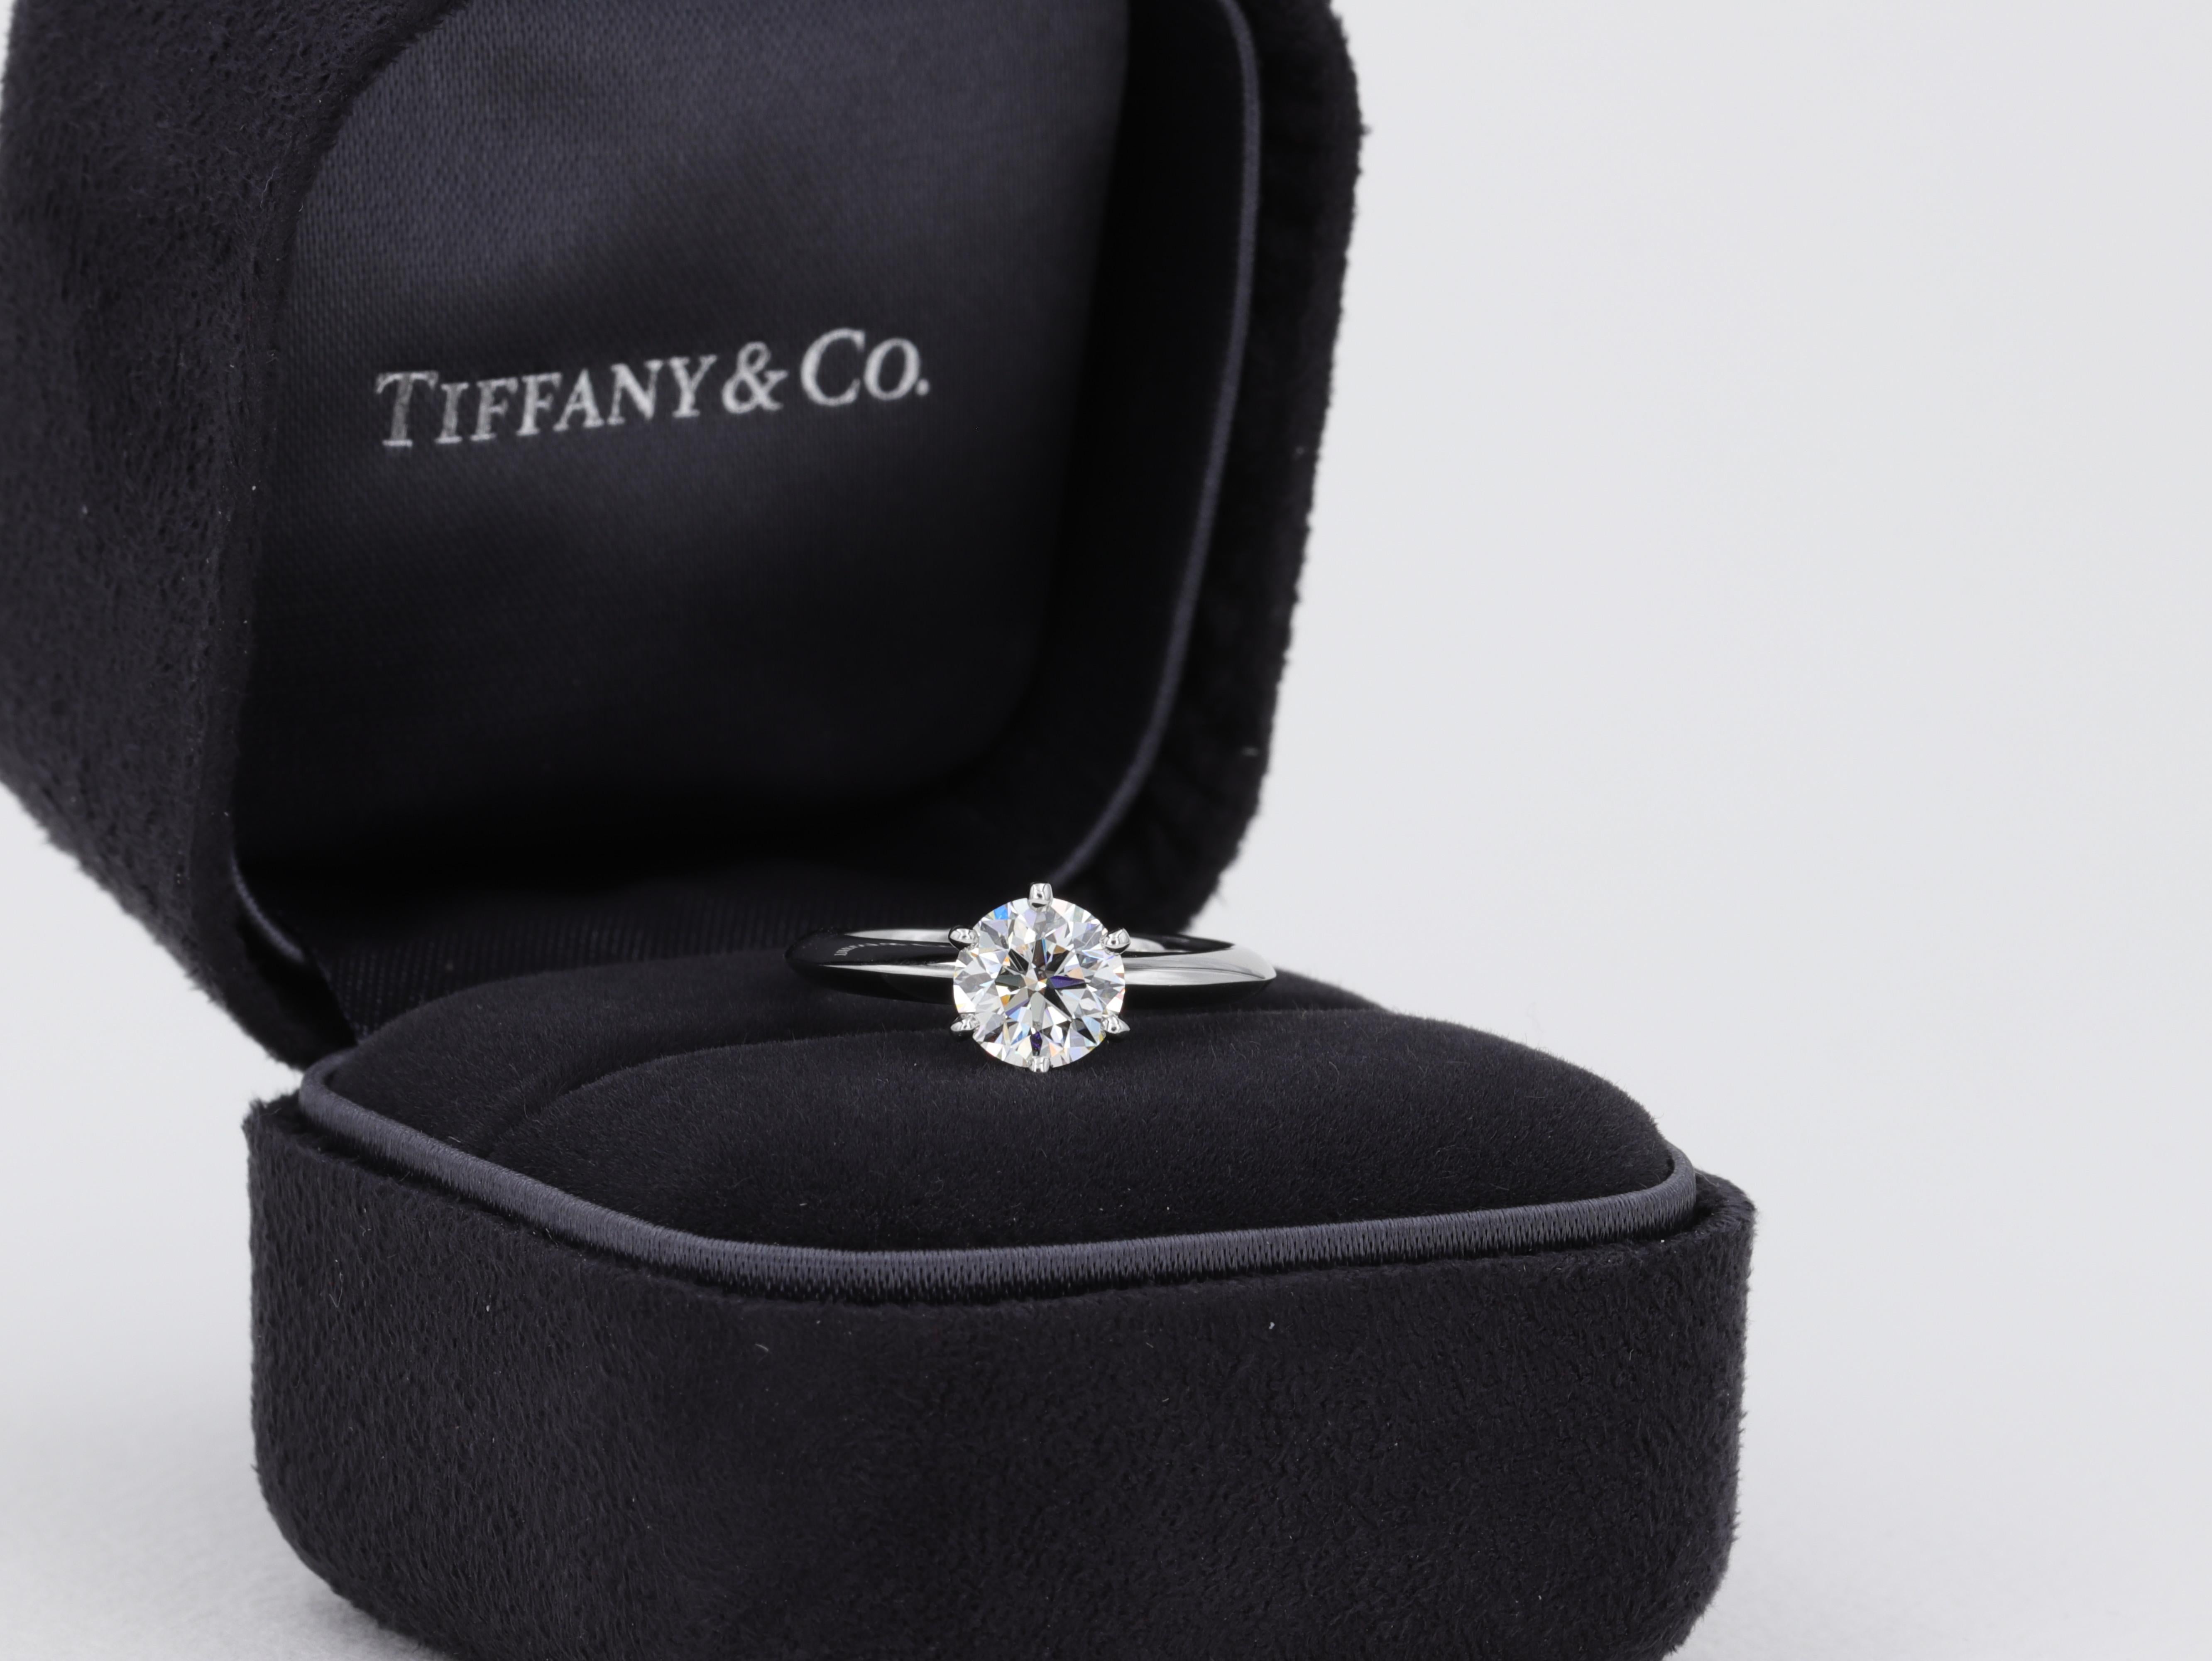 Dieser klassische Solitär-Diamant-Verlobungsring von Tiffany & Co. zeichnet sich durch einen runden Diamanten mit Brillantschliff von 1,09 Karat aus, der von Tiffany & Co. mit der Farbe I und der Reinheit VS1 bewertet wurde. 

Der Ring wird